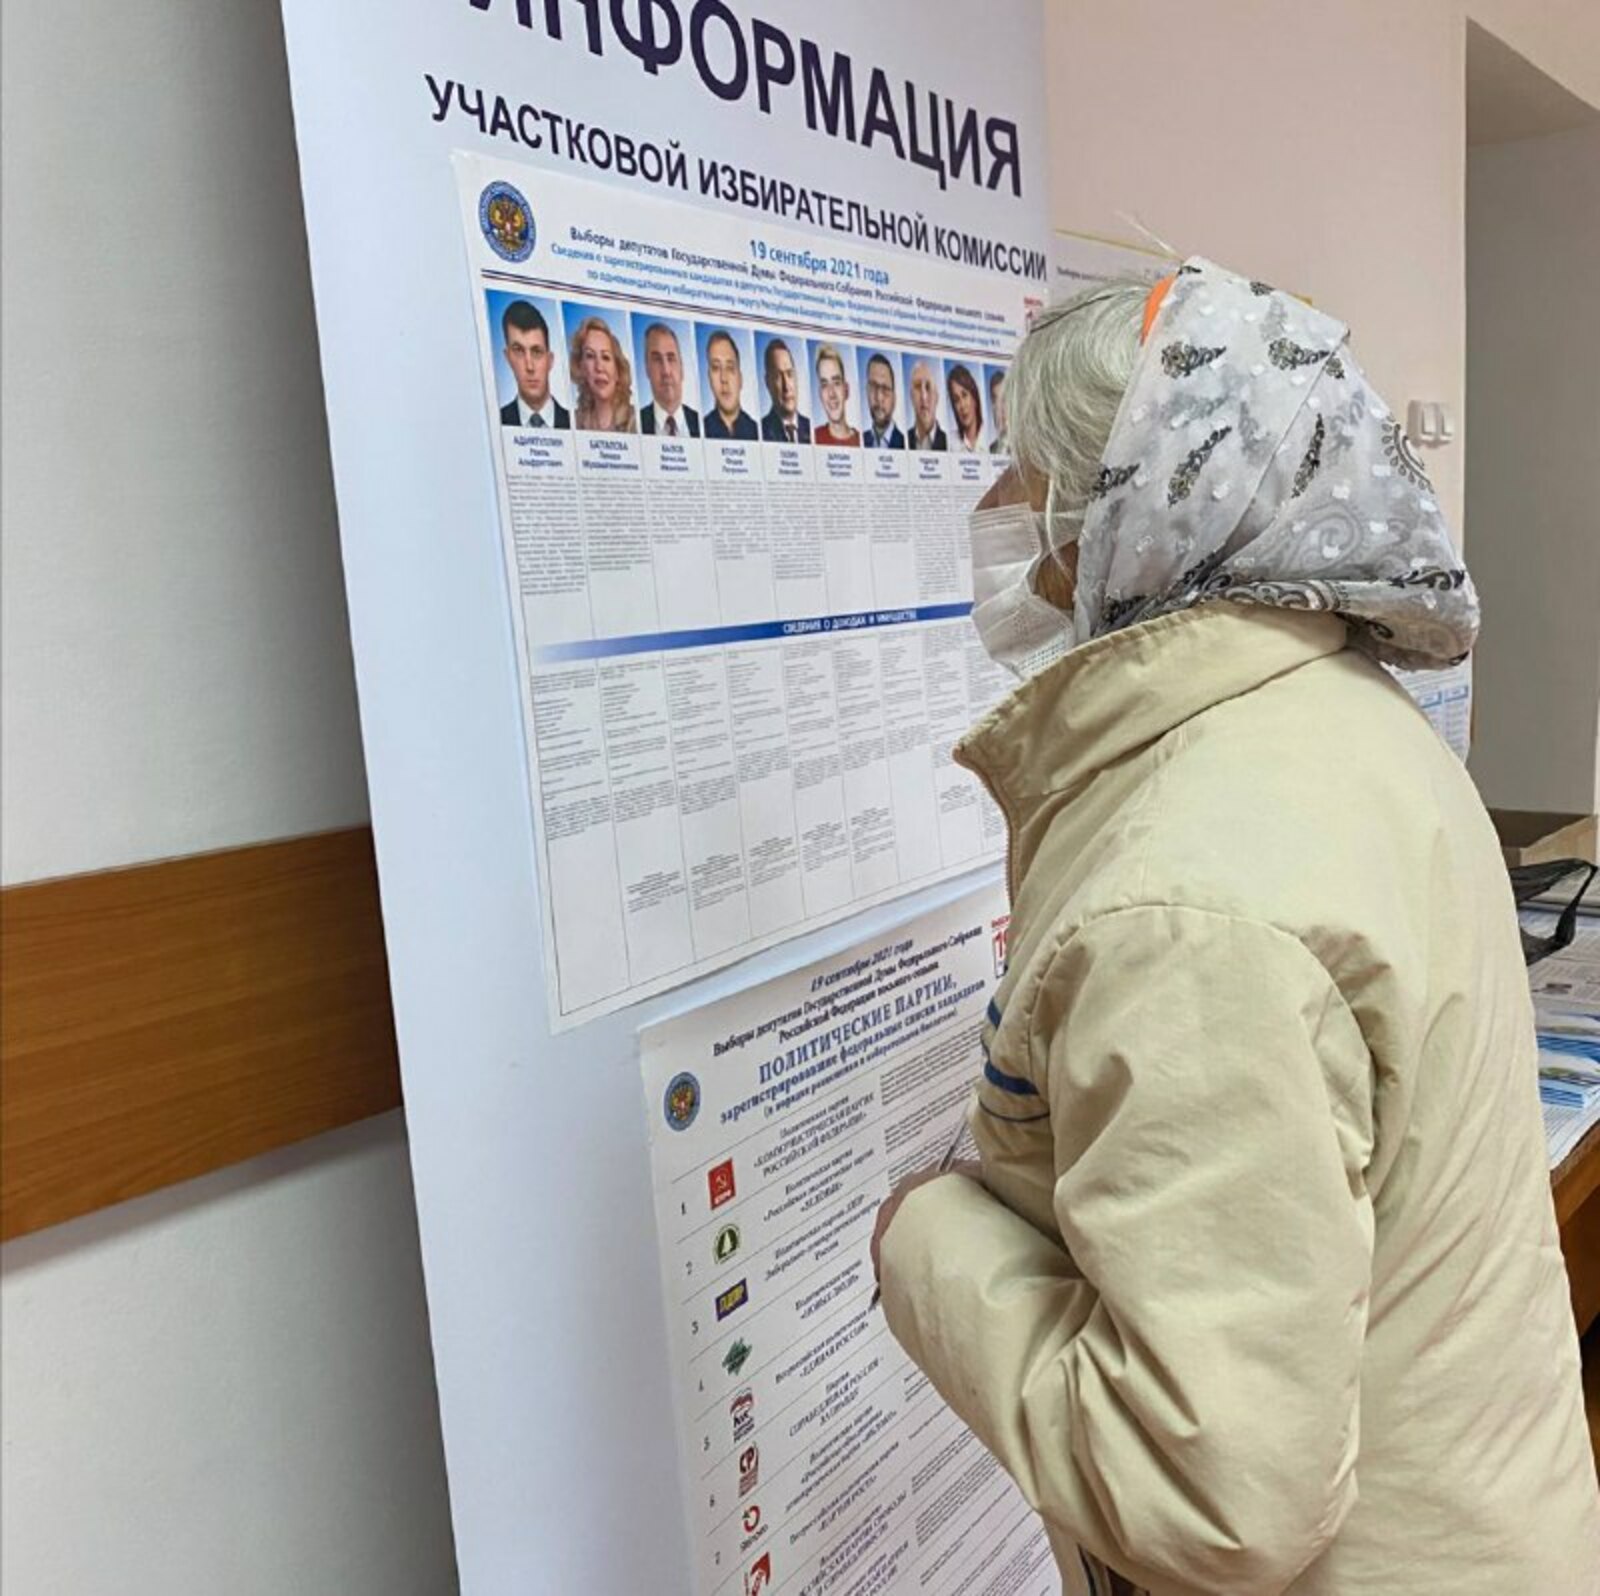 Участковый избирательный участок №1817 посетила 85-летняя жительница города Дюртюли